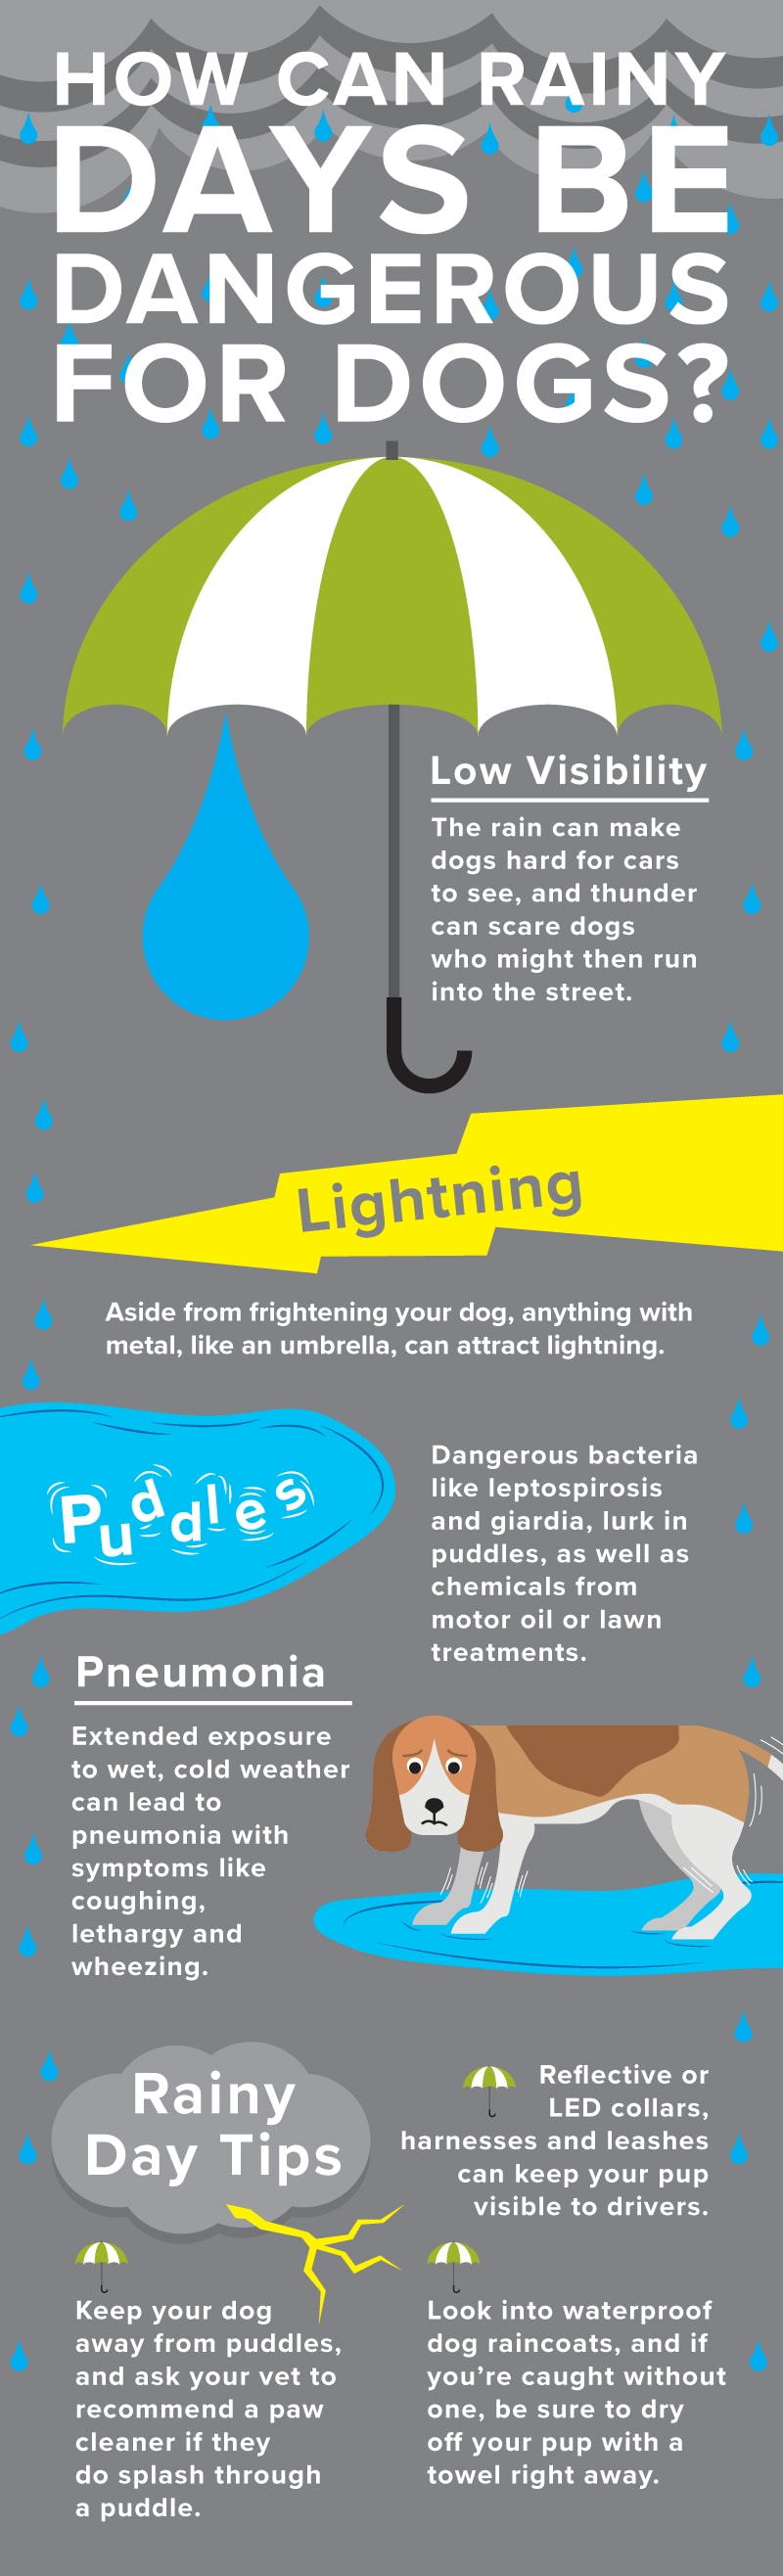 雨天的宠物安全风险包括钩端螺旋体病、贾第鞭毛虫病、低能见度和肺炎。